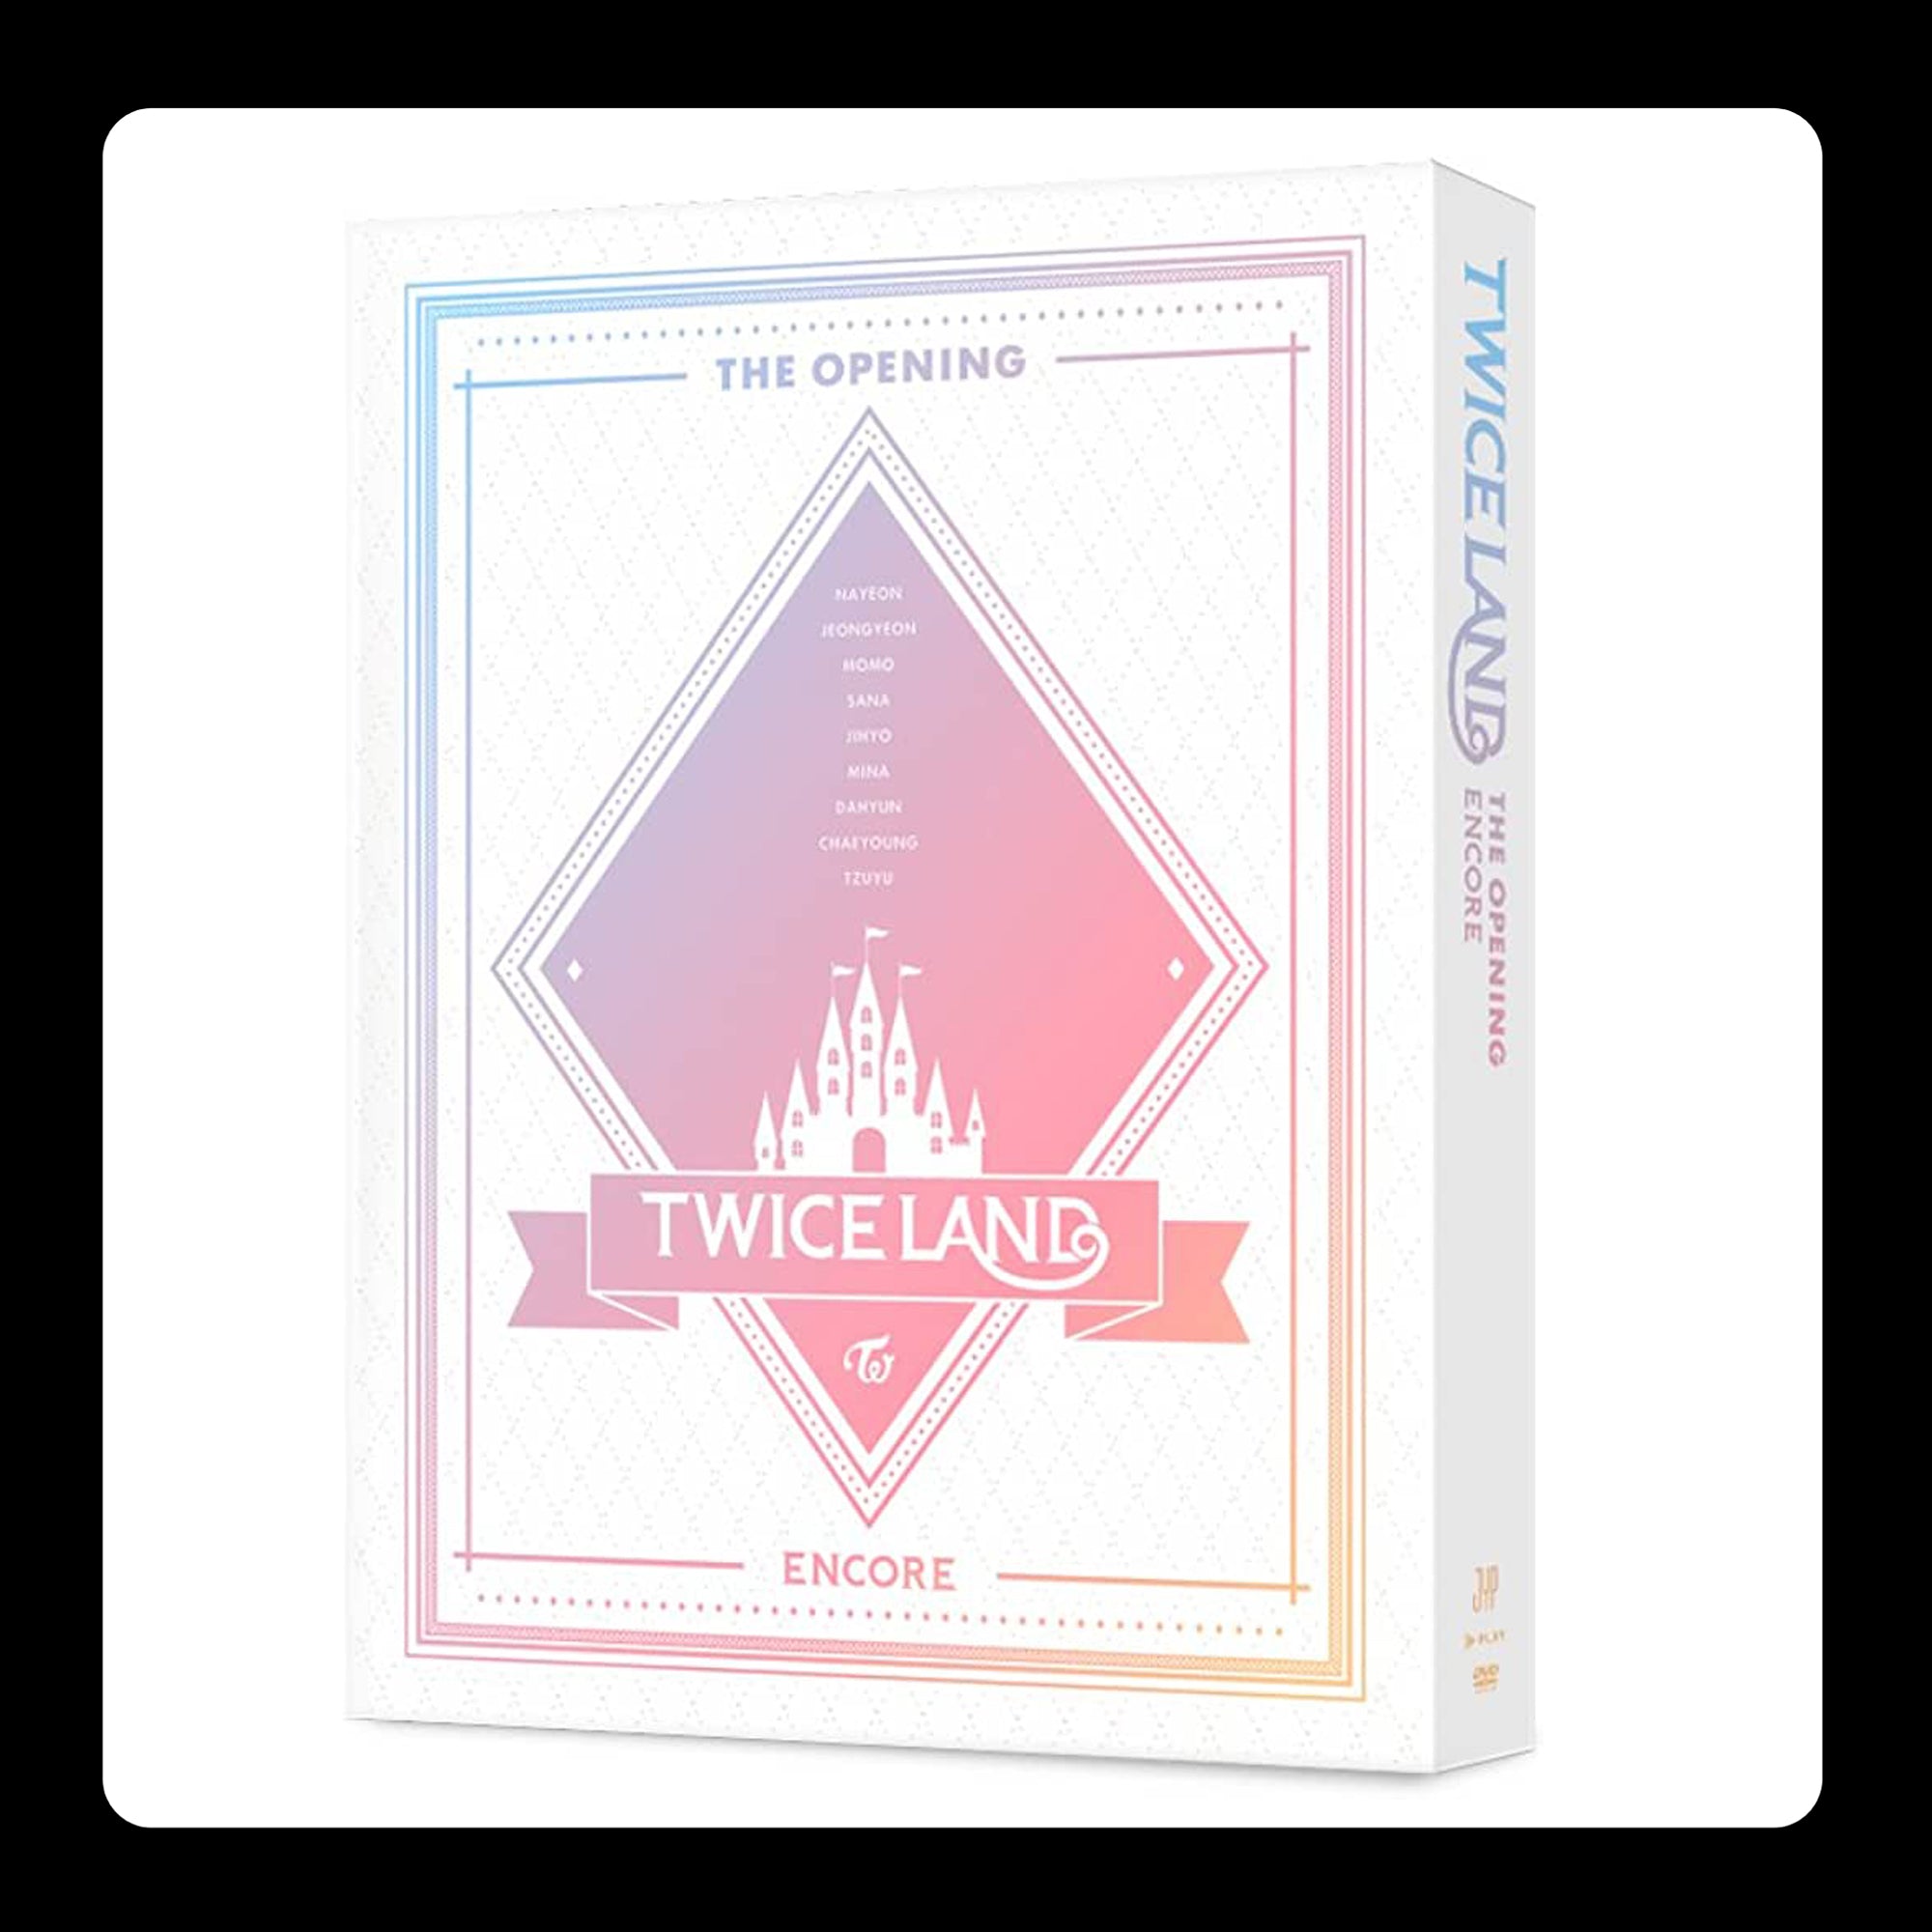 TWICE : Twiceland Encore DVD